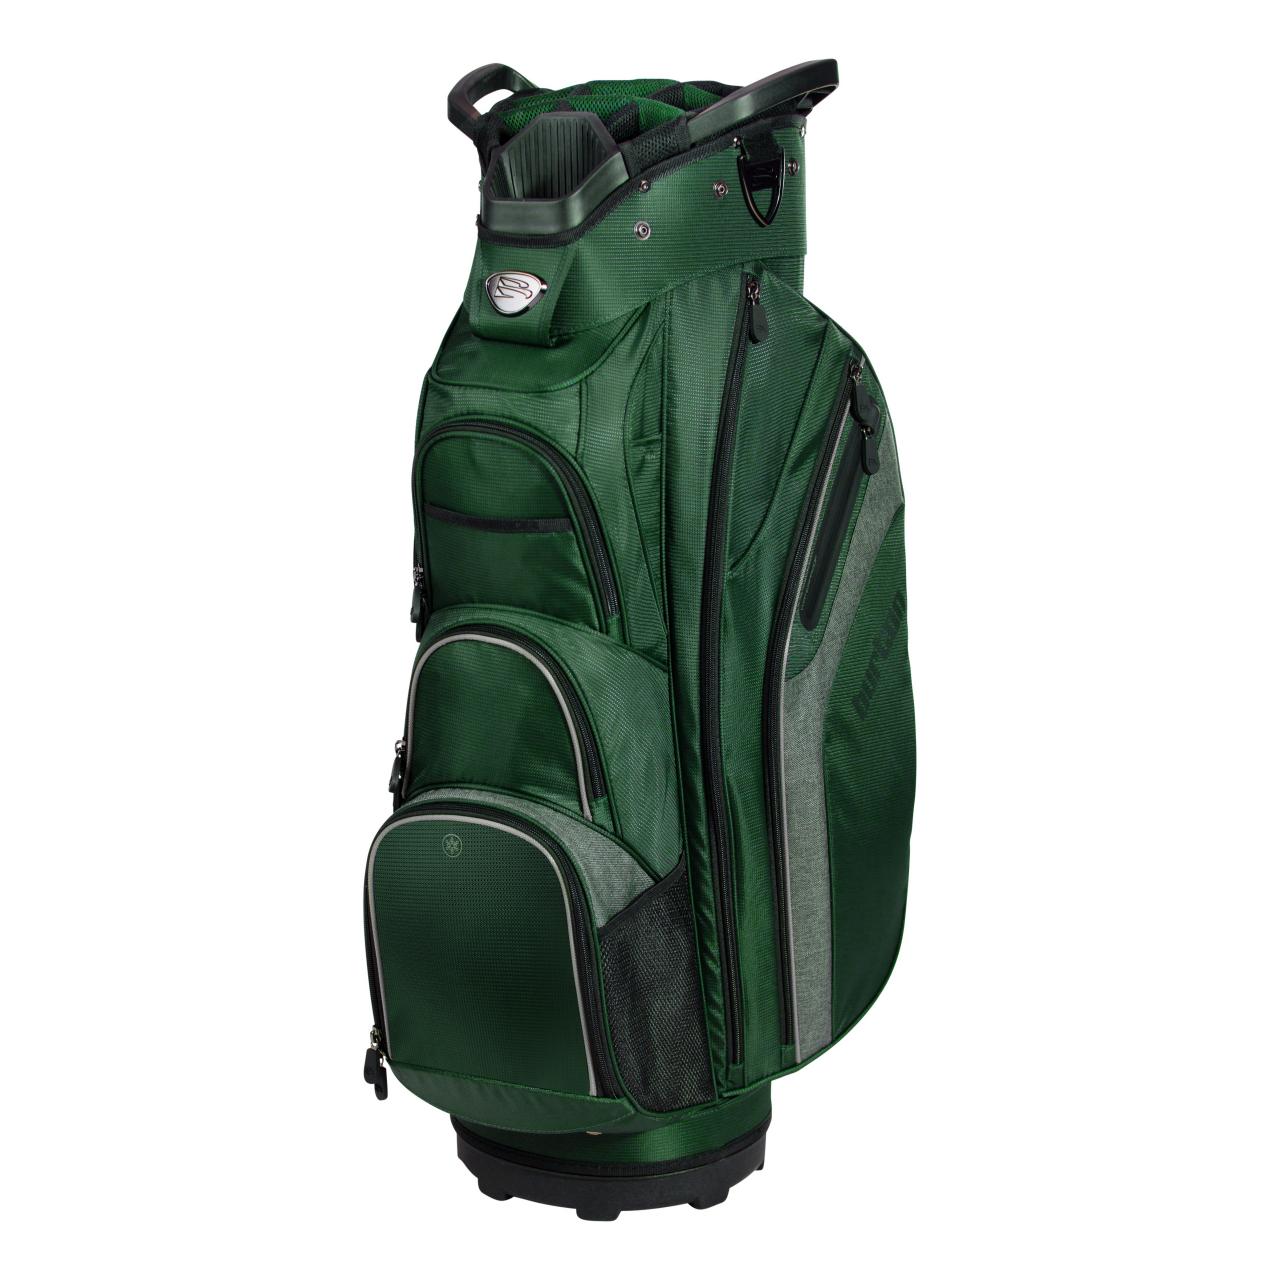 Best New Golf Bags Equipment Golf Digest